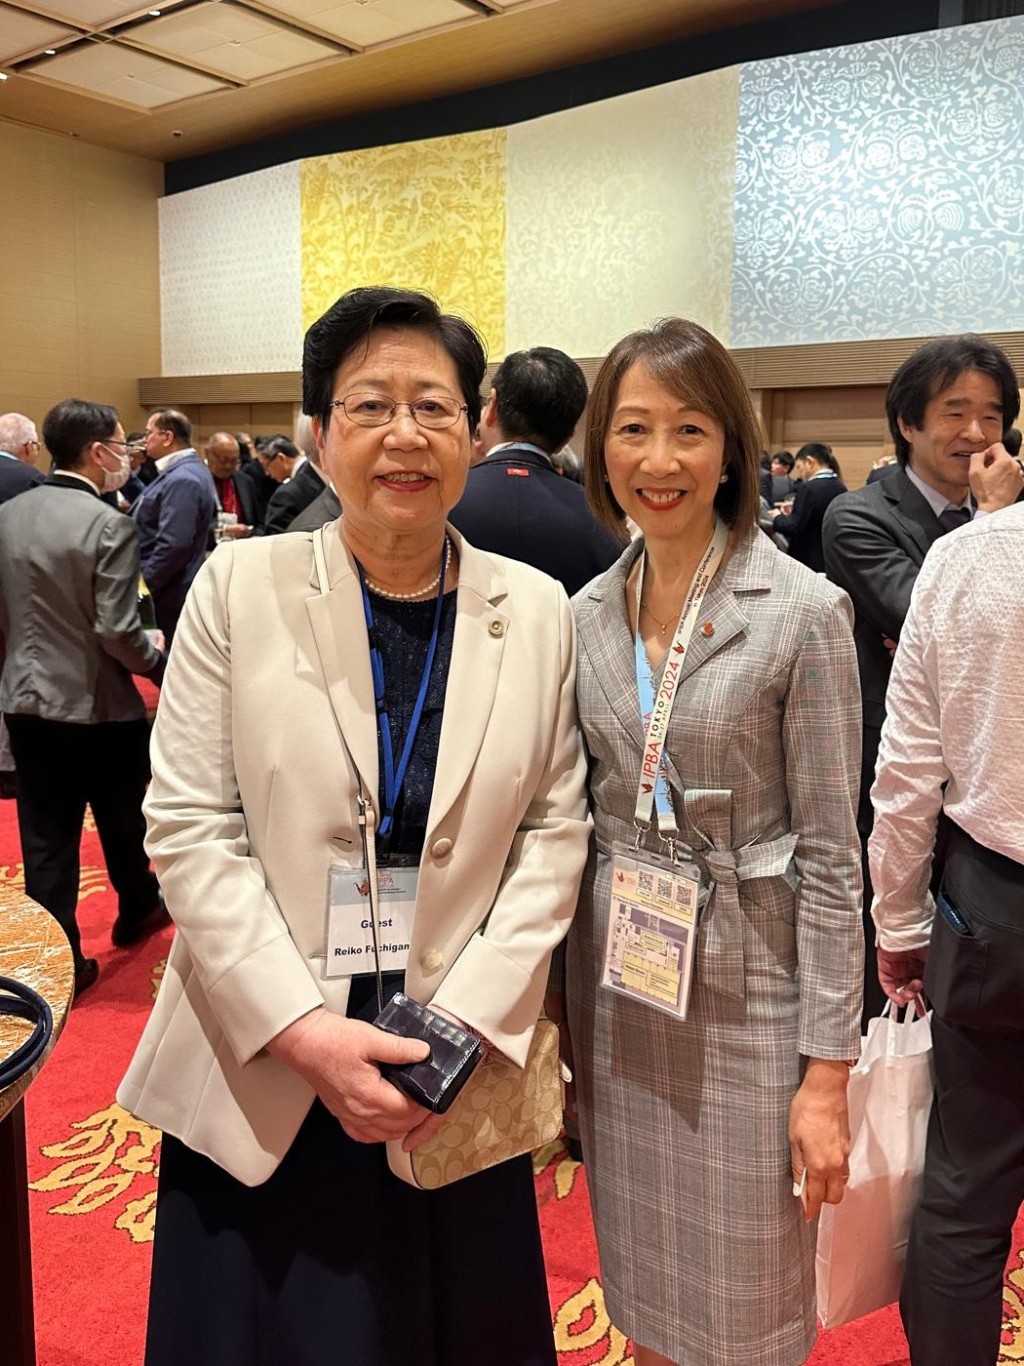 香港律师会代表团出席环太平洋律师协会年会暨会议。